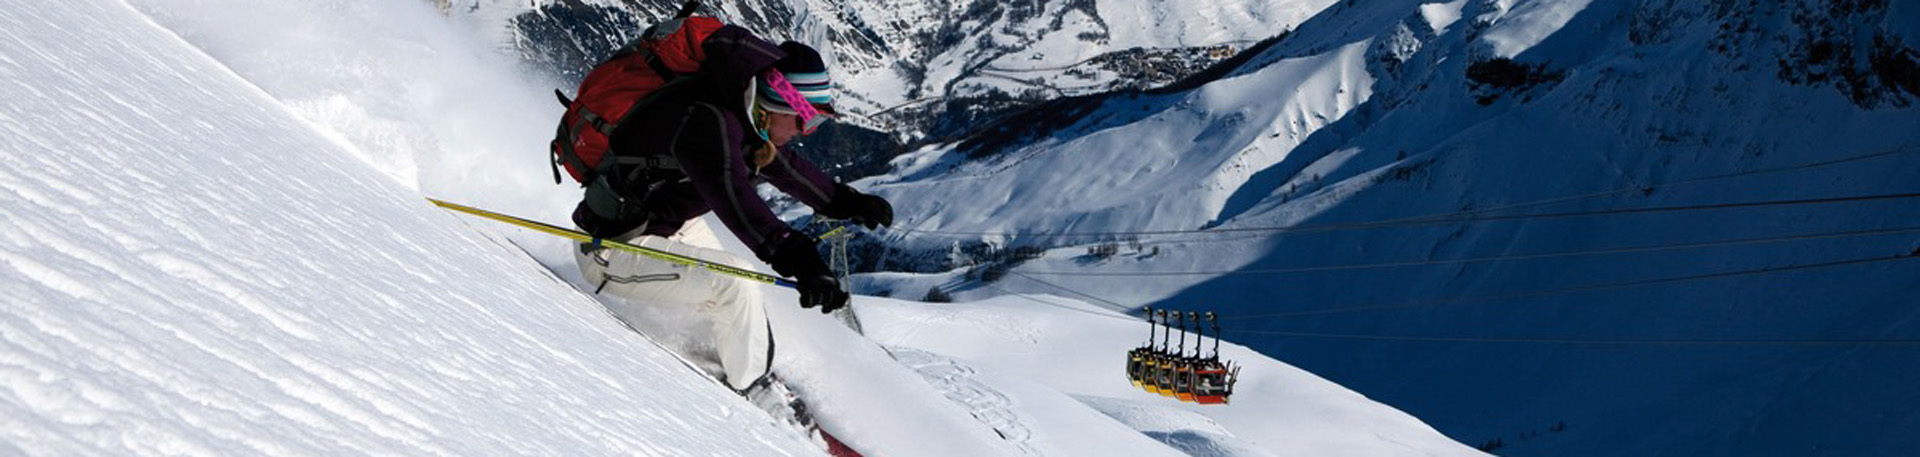 Ski freeride téléphérique La Grave 